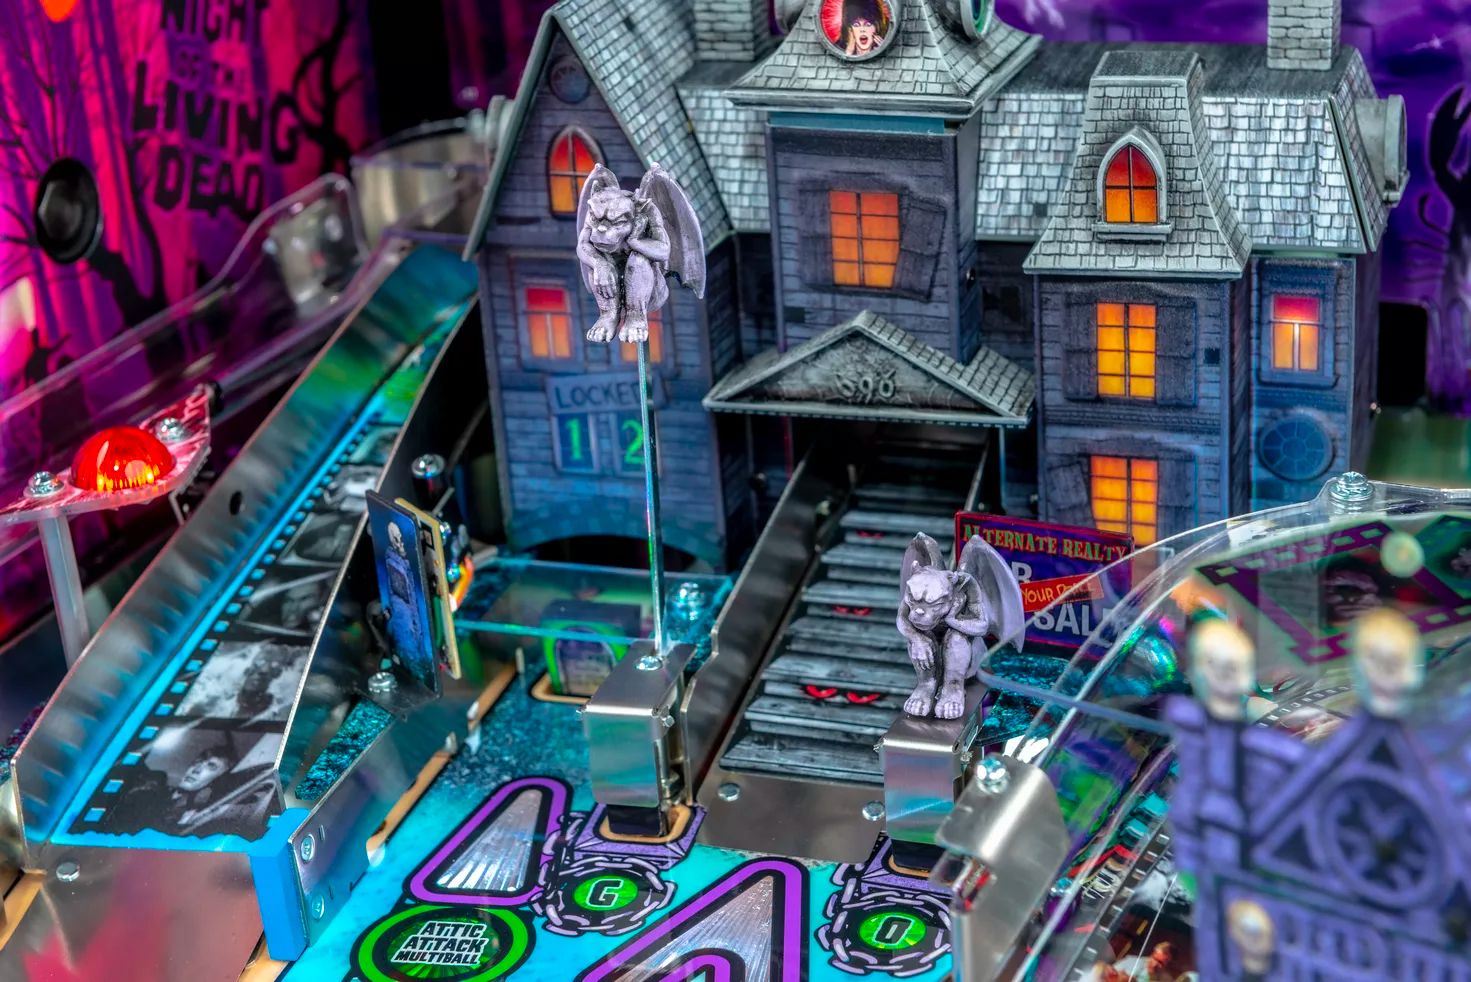 Elvira's House of Horrors Pinball machine by Stern #12